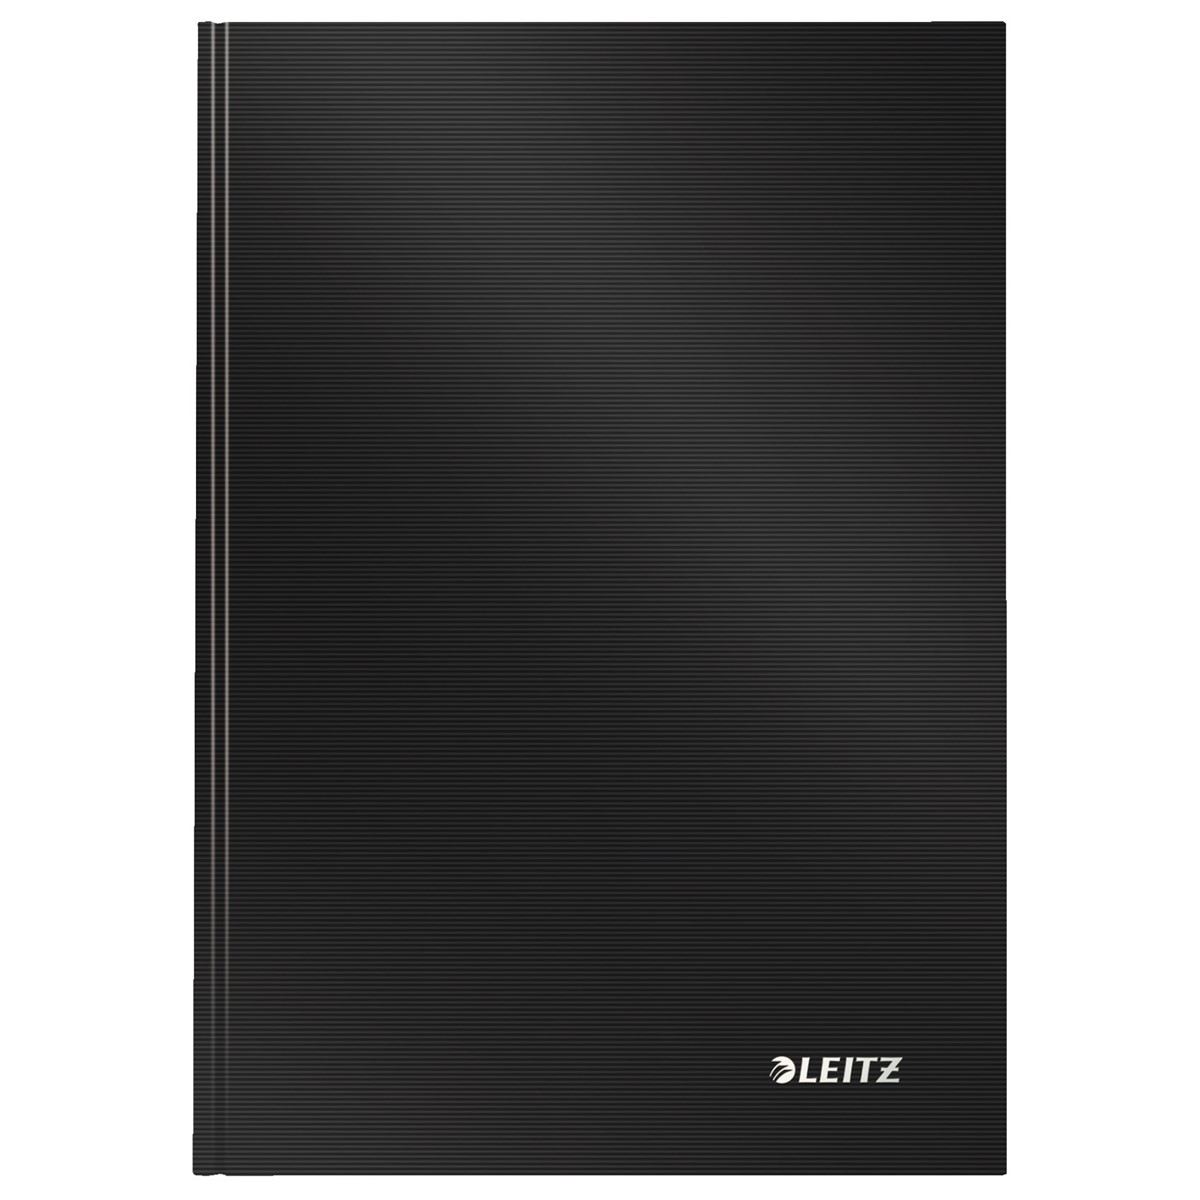 LEITZ Notizbuch Solid Hardcover DIN A5 80 Blatt schwarz